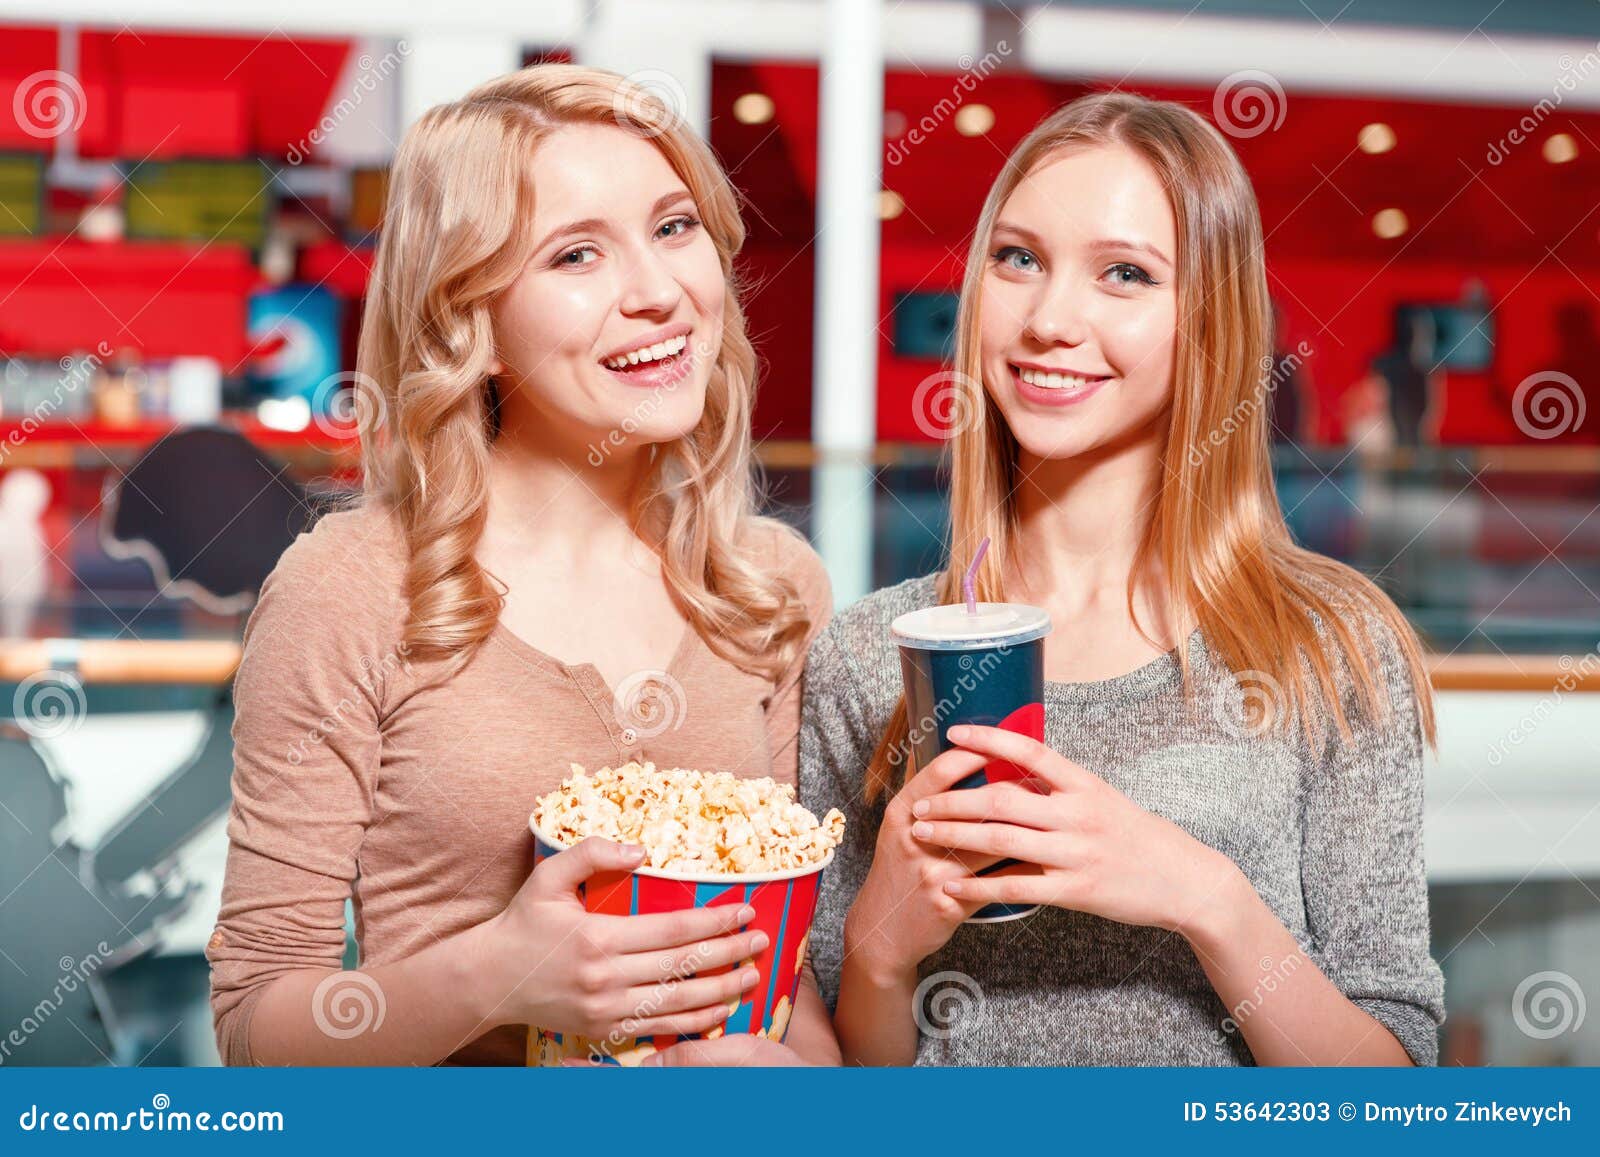 two-girls-coke-popcorn-earnest-glance-pr